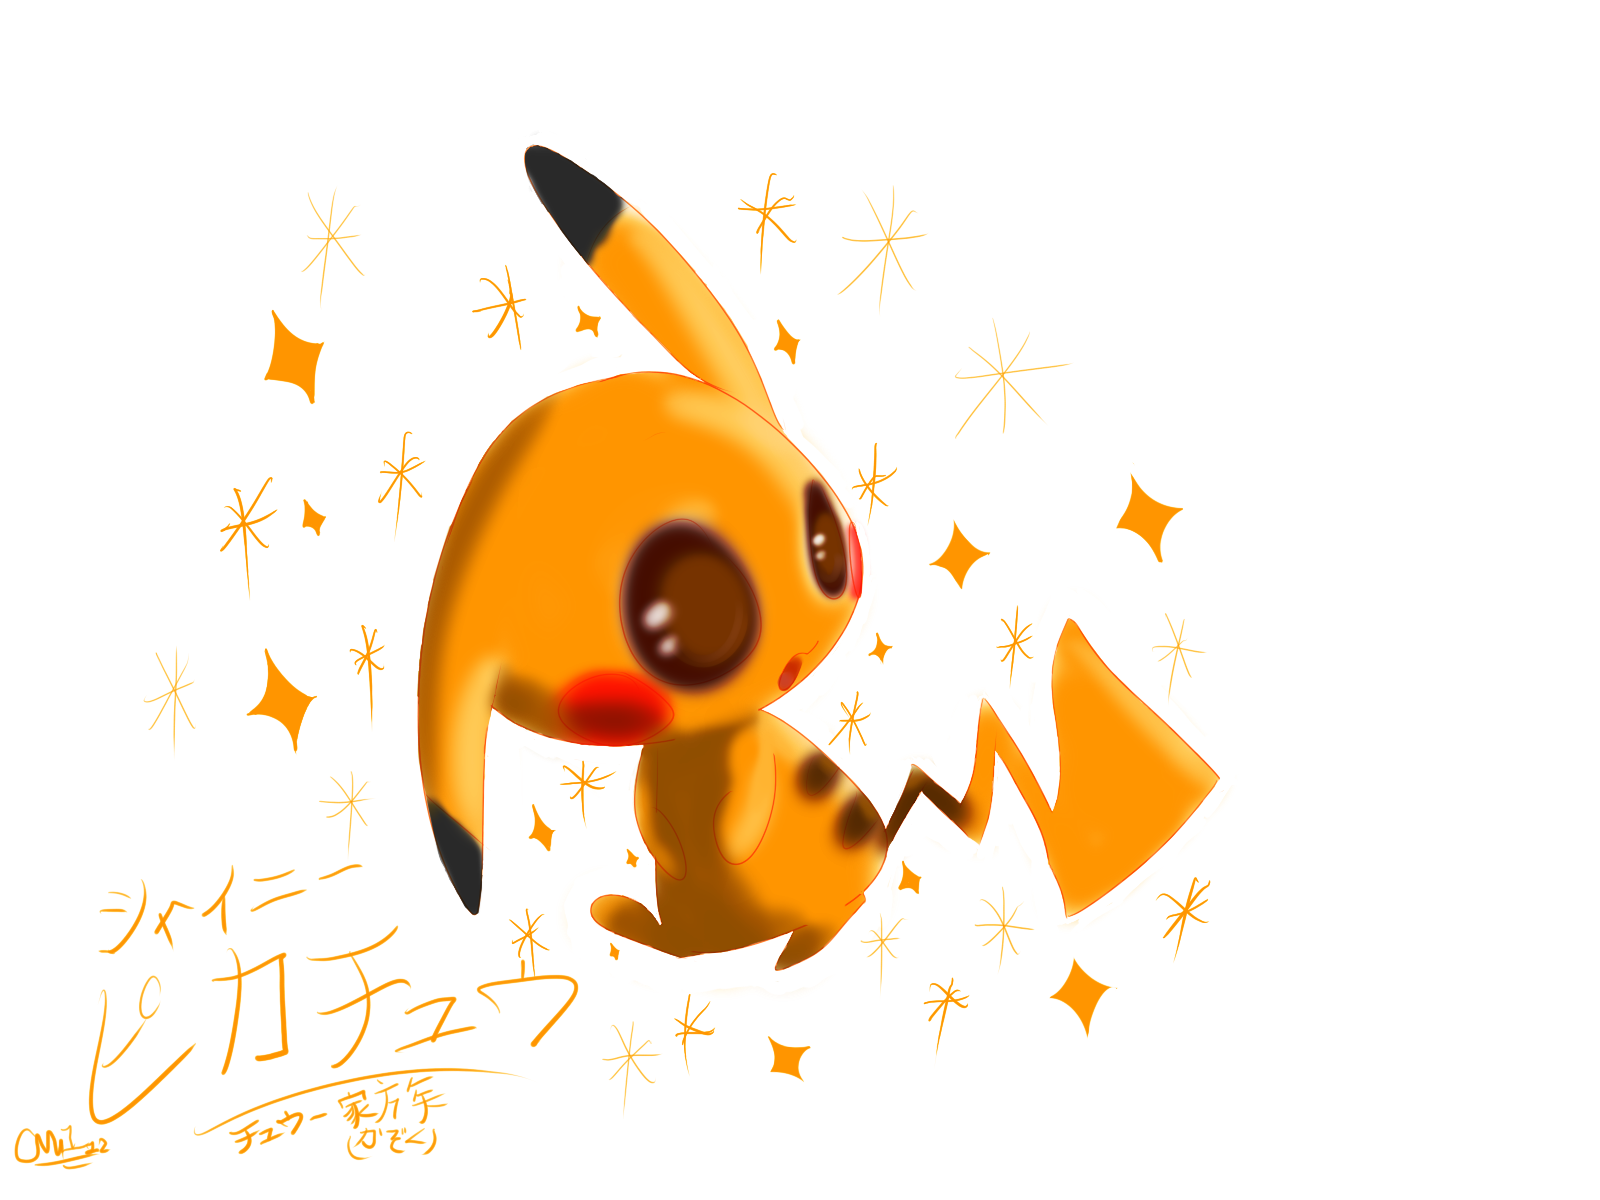 Pikachu Shiny - Pokemon Crystal by Frost696Bite on DeviantArt